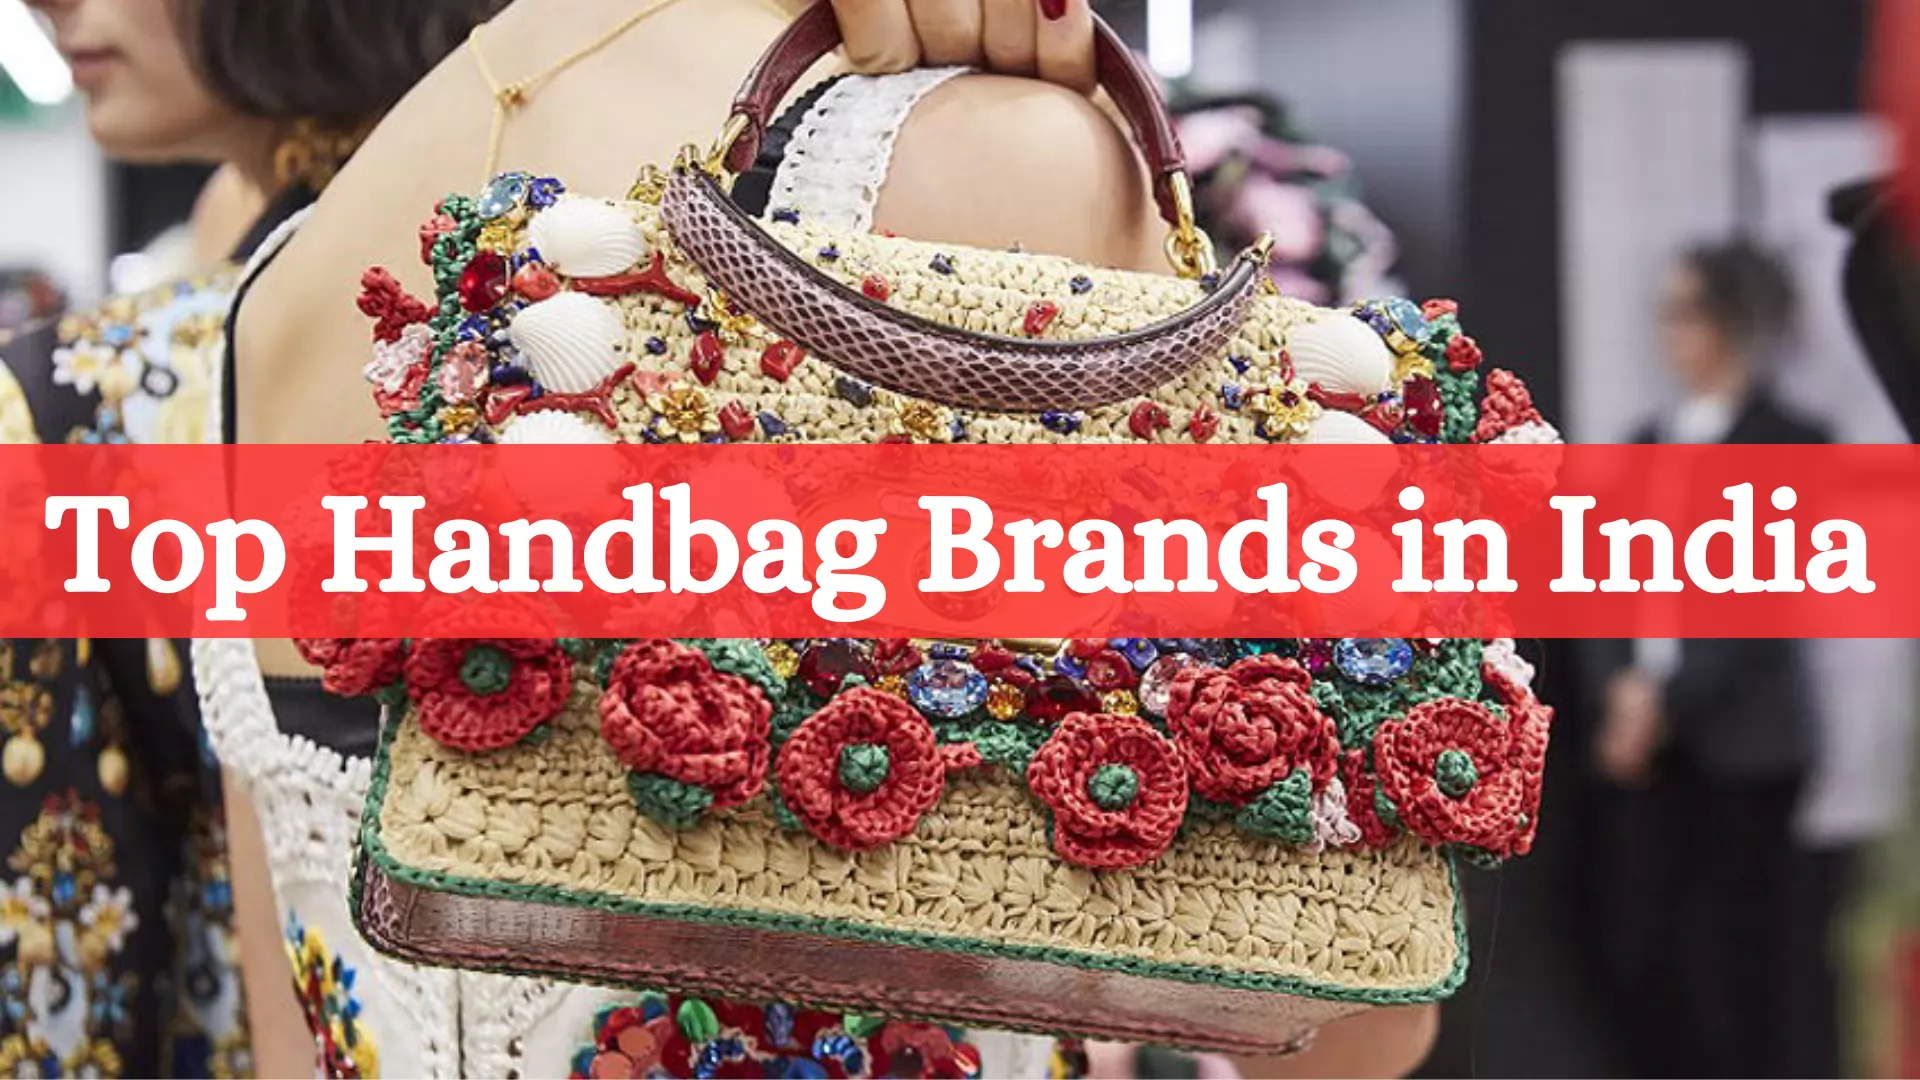 10 Best Handbag Brands in India 2023